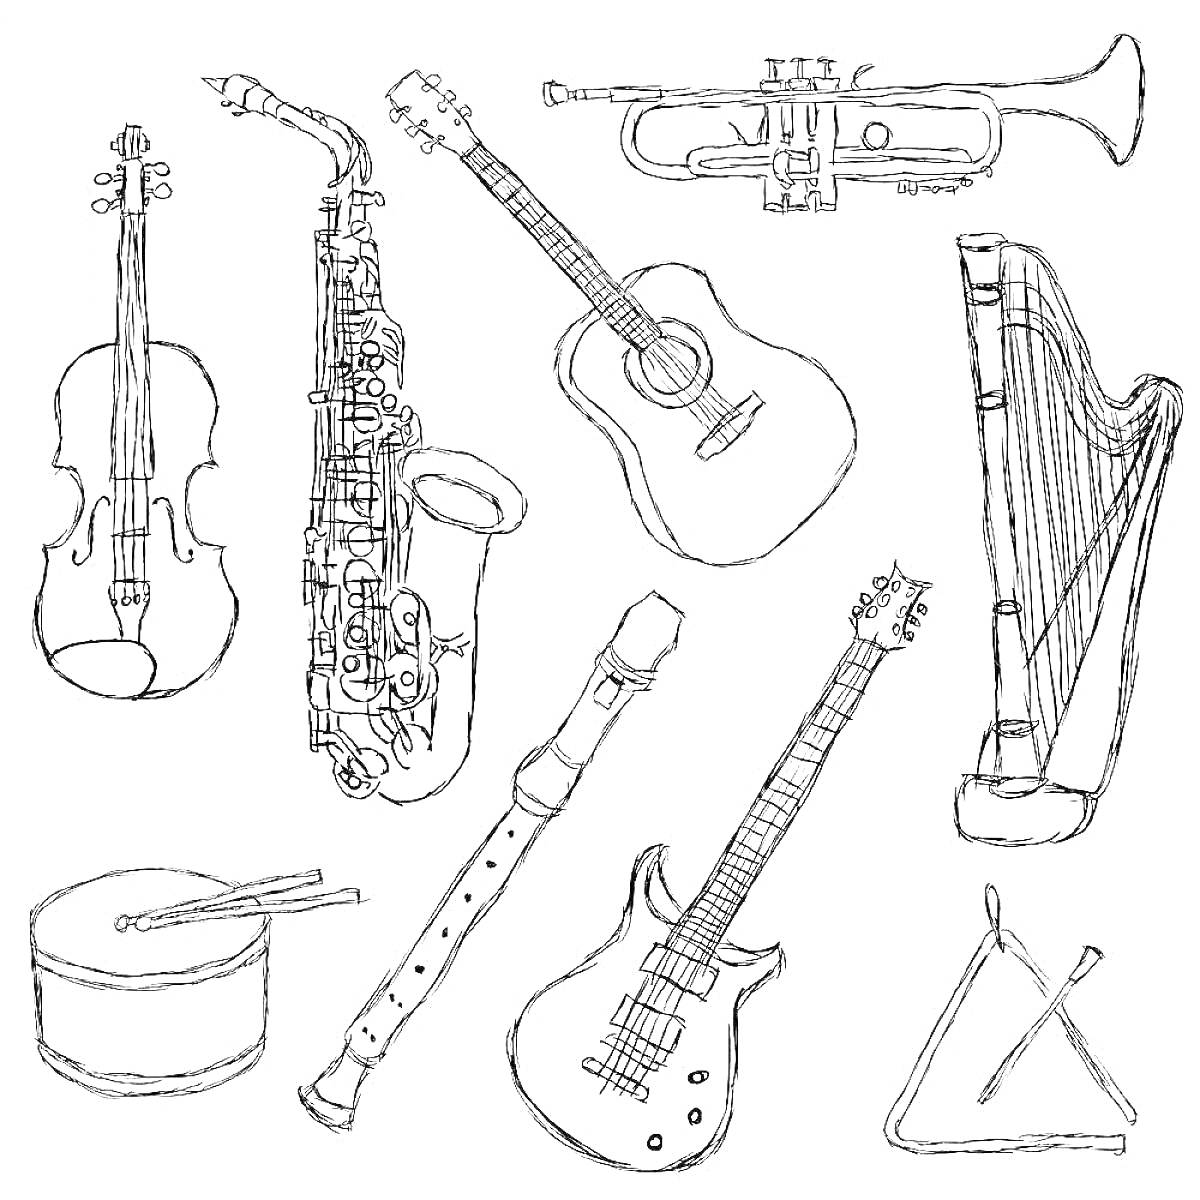 Раскраска с музыкальными инструментами: скрипка, саксофон, труба, акустическая гитара, арфа, большой барабан с палочками, блокфлейта, электрогитара, треугольник с палочкой